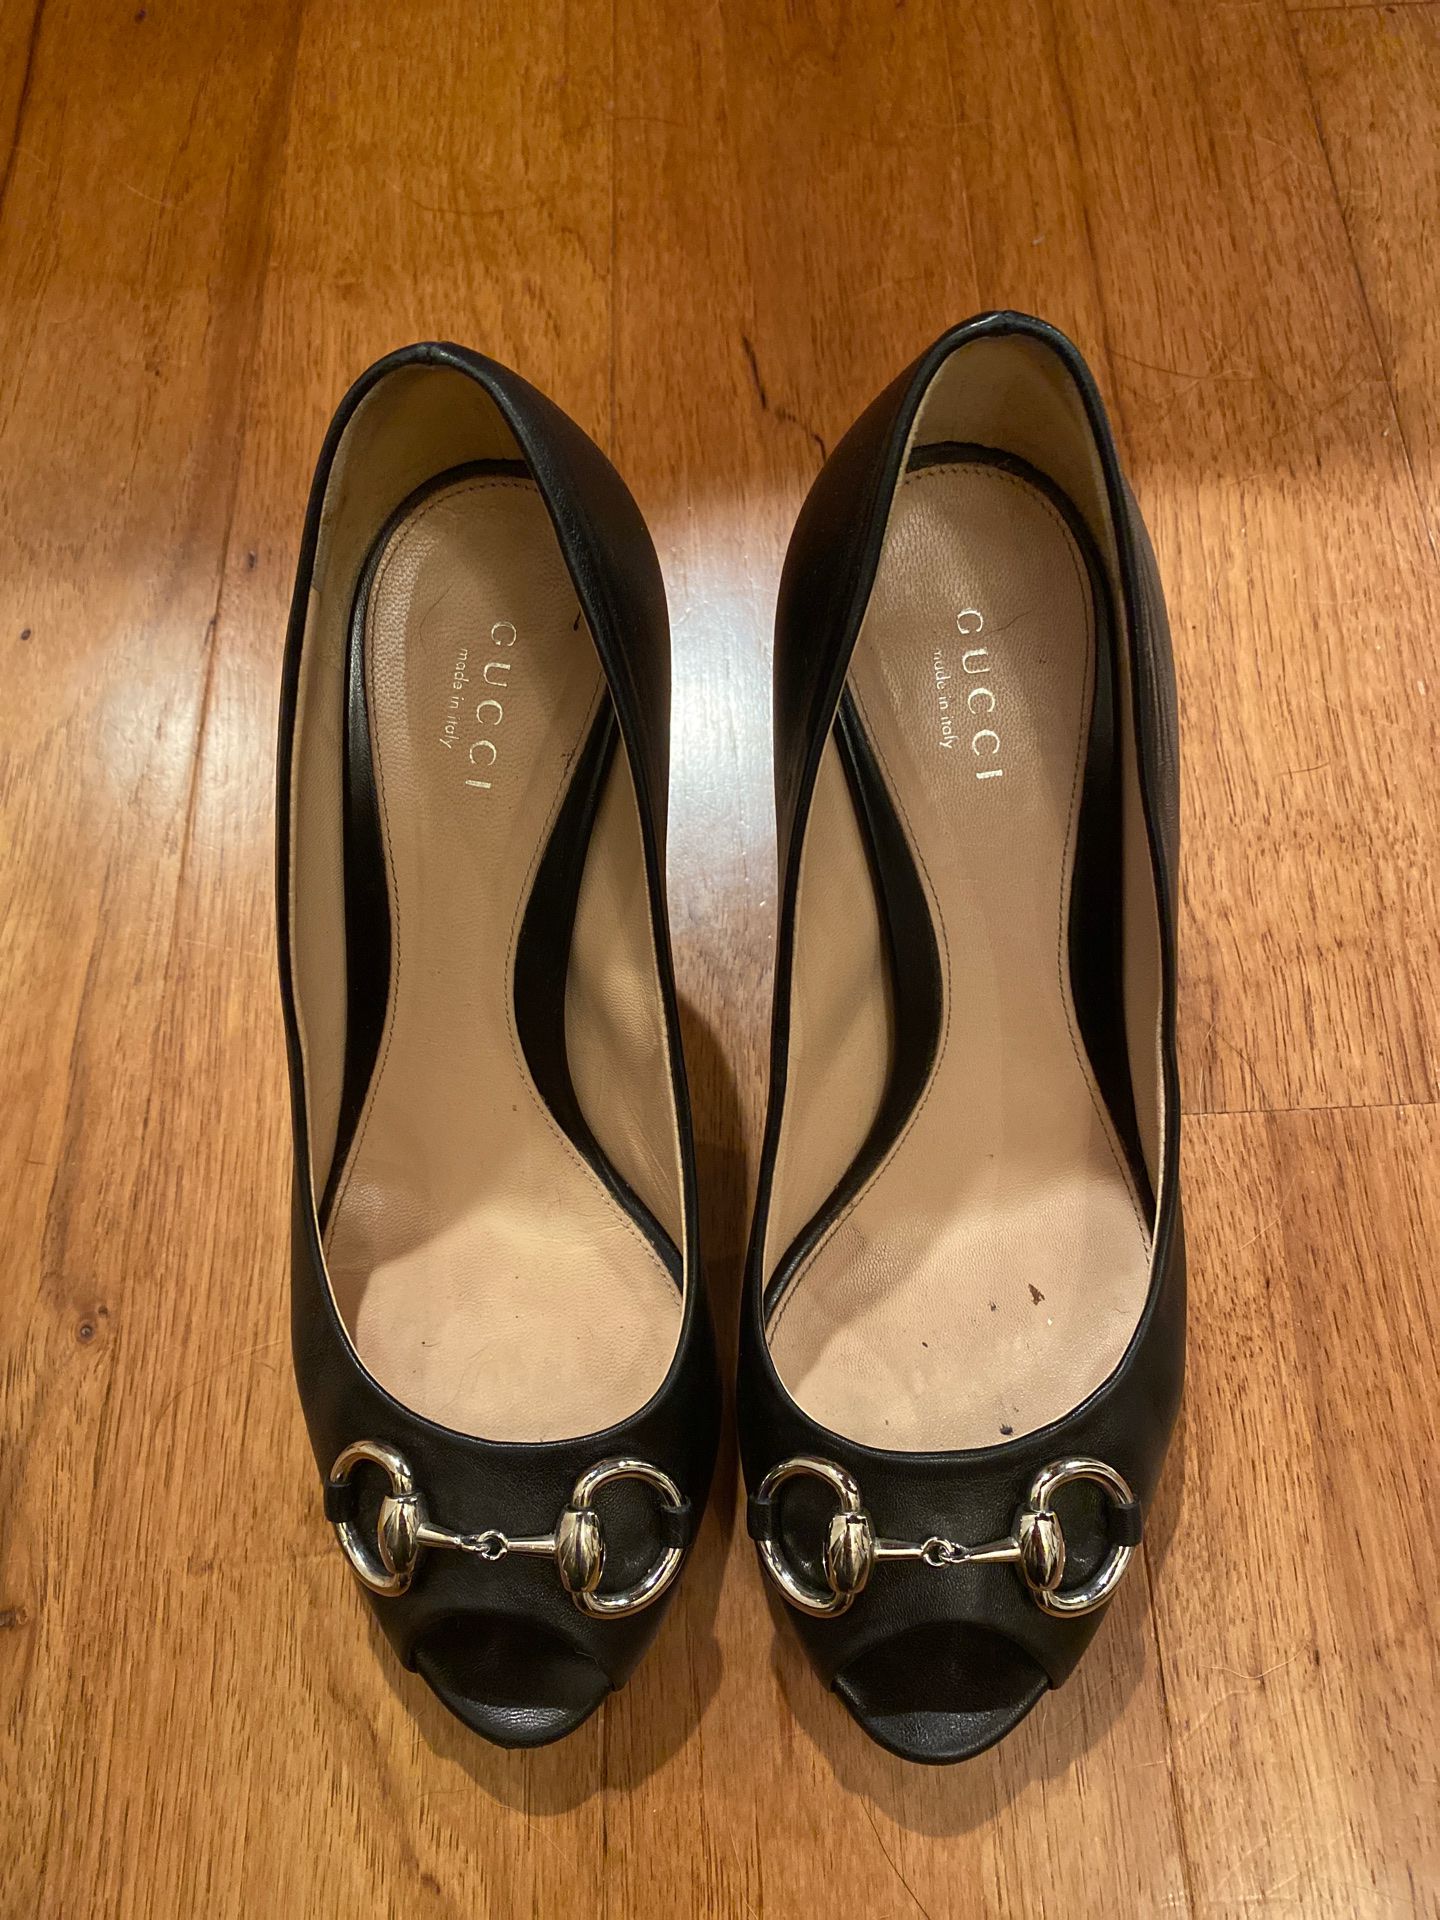 Gucci black heels